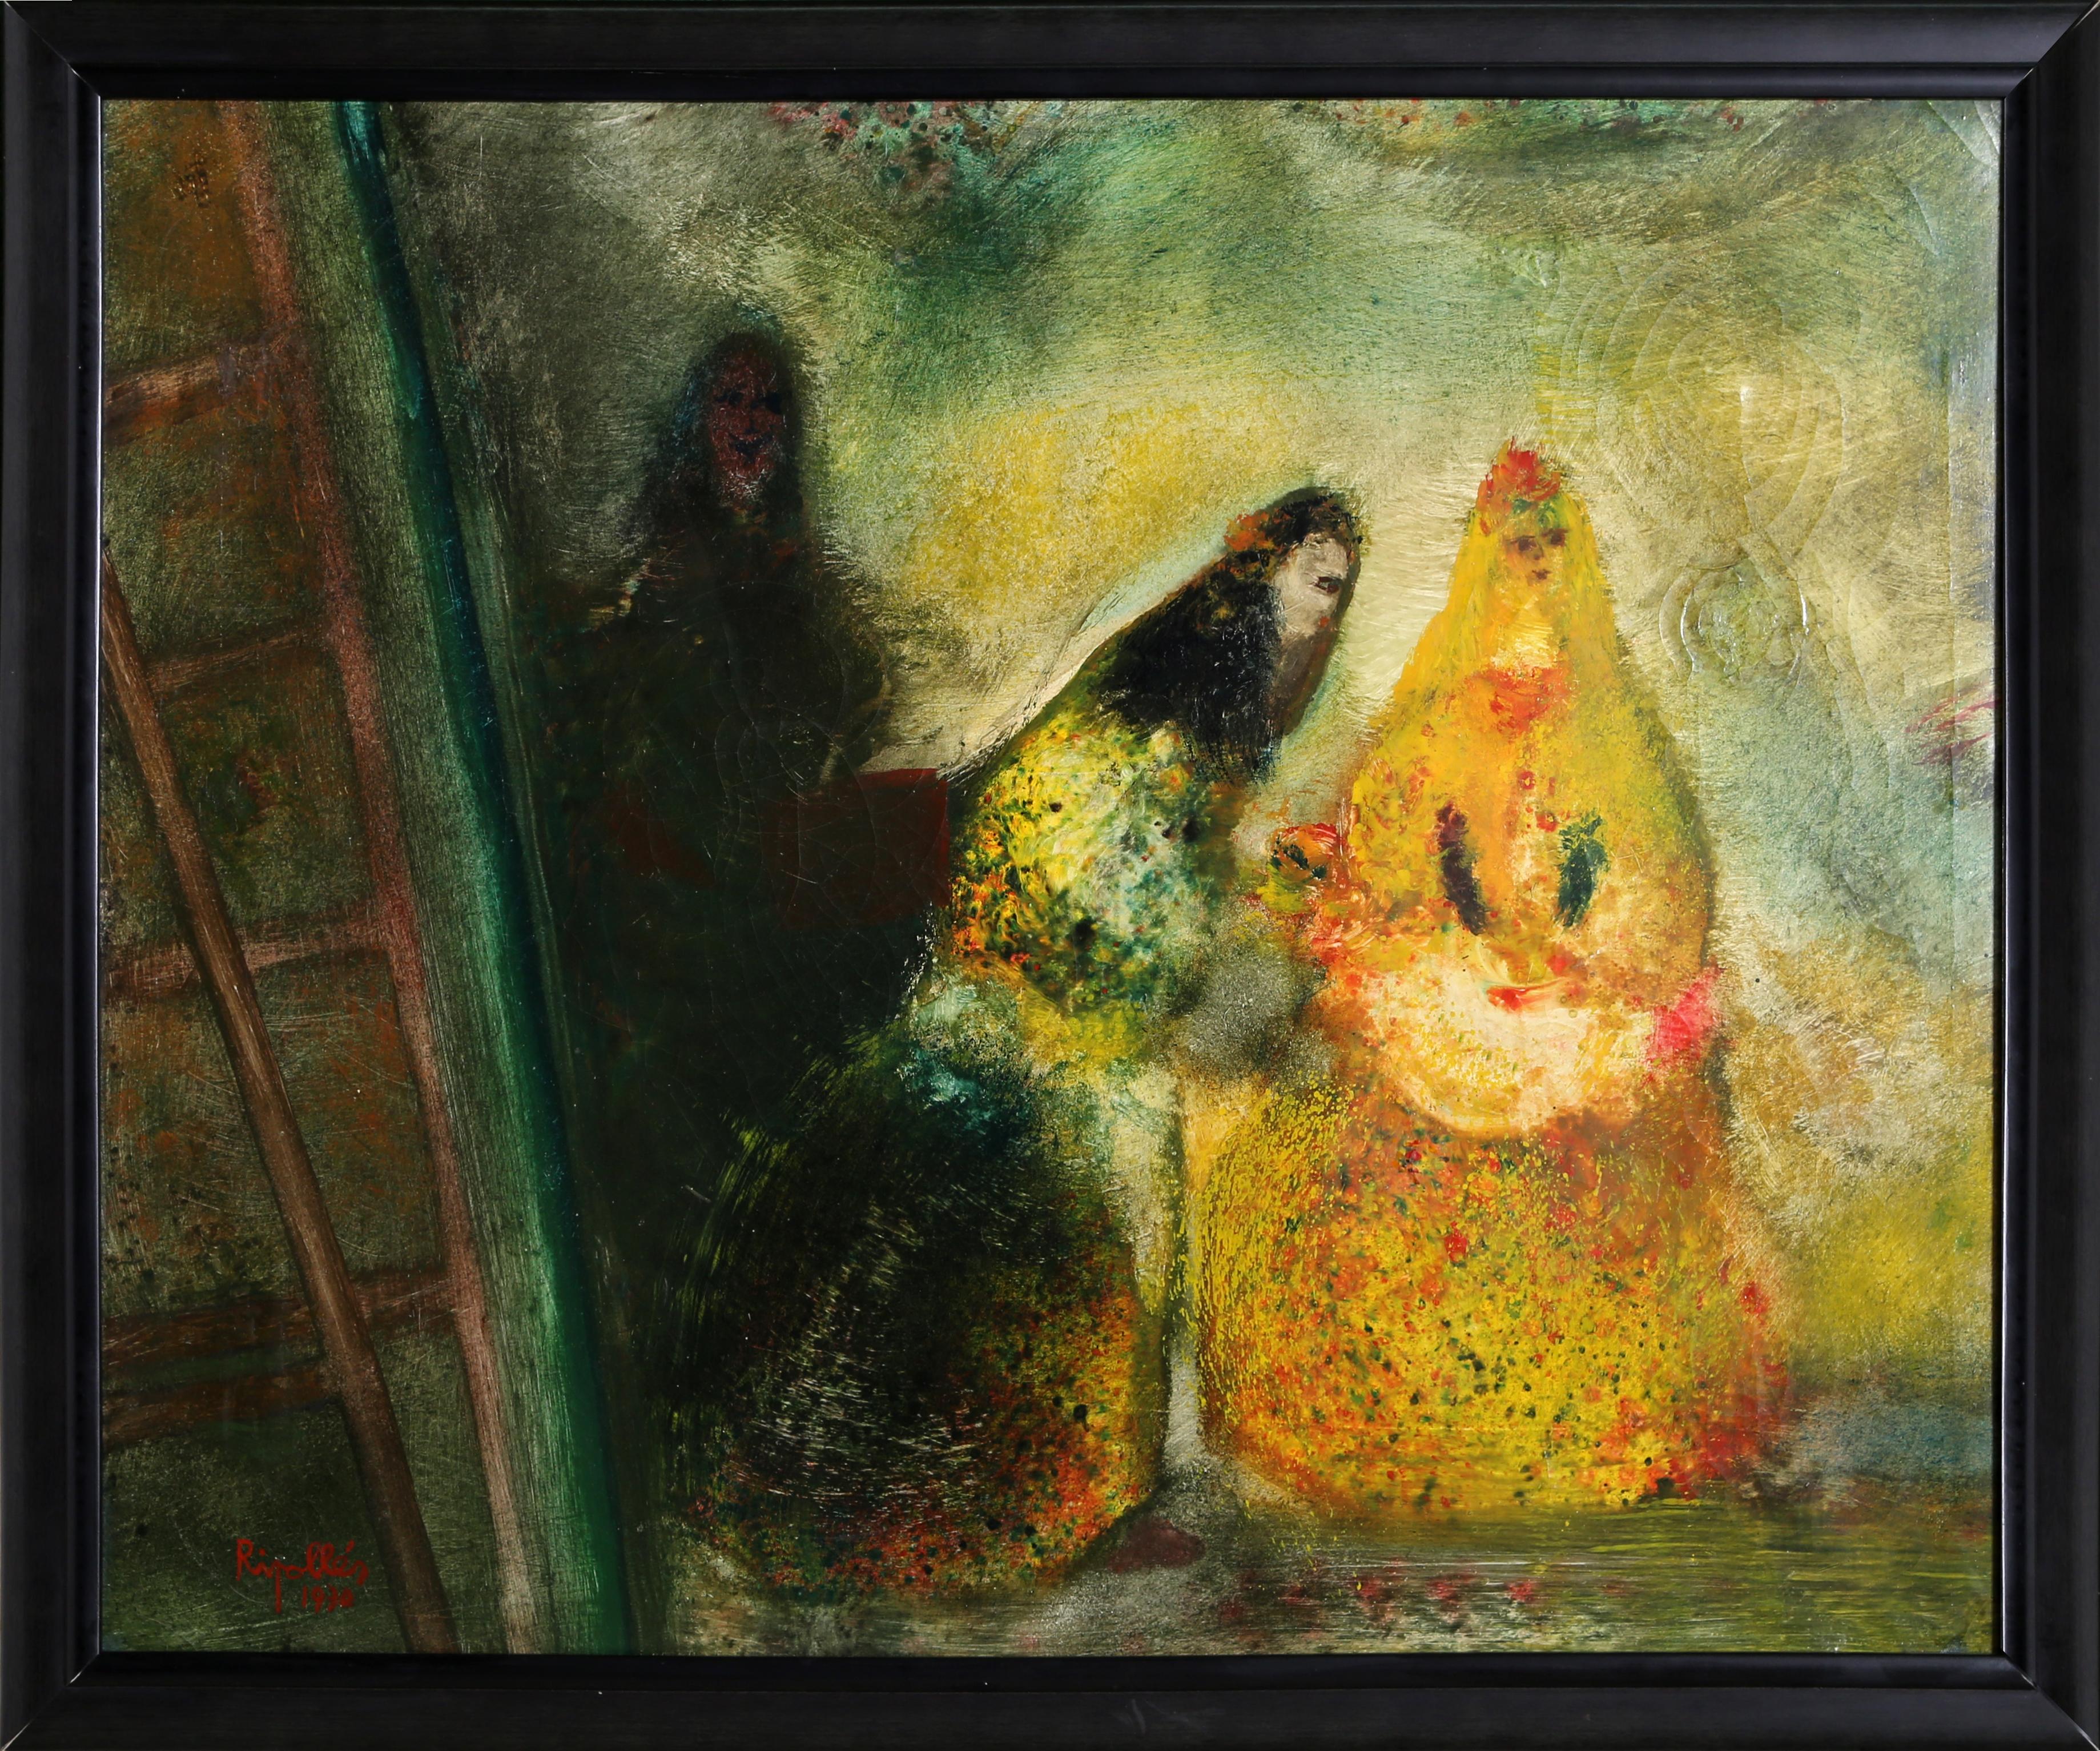 Artiste : Juan Garcia Ripolles, espagnol (1932 - )
Titre : Trois femmes
Année : 1970
Moyen : Huile sur toile, signé à gauche.
Taille : 23.75 in. x 29 in. (60,33 cm x 73,66 cm)
Taille du cadre : 26.25 x 31.5 pouces 